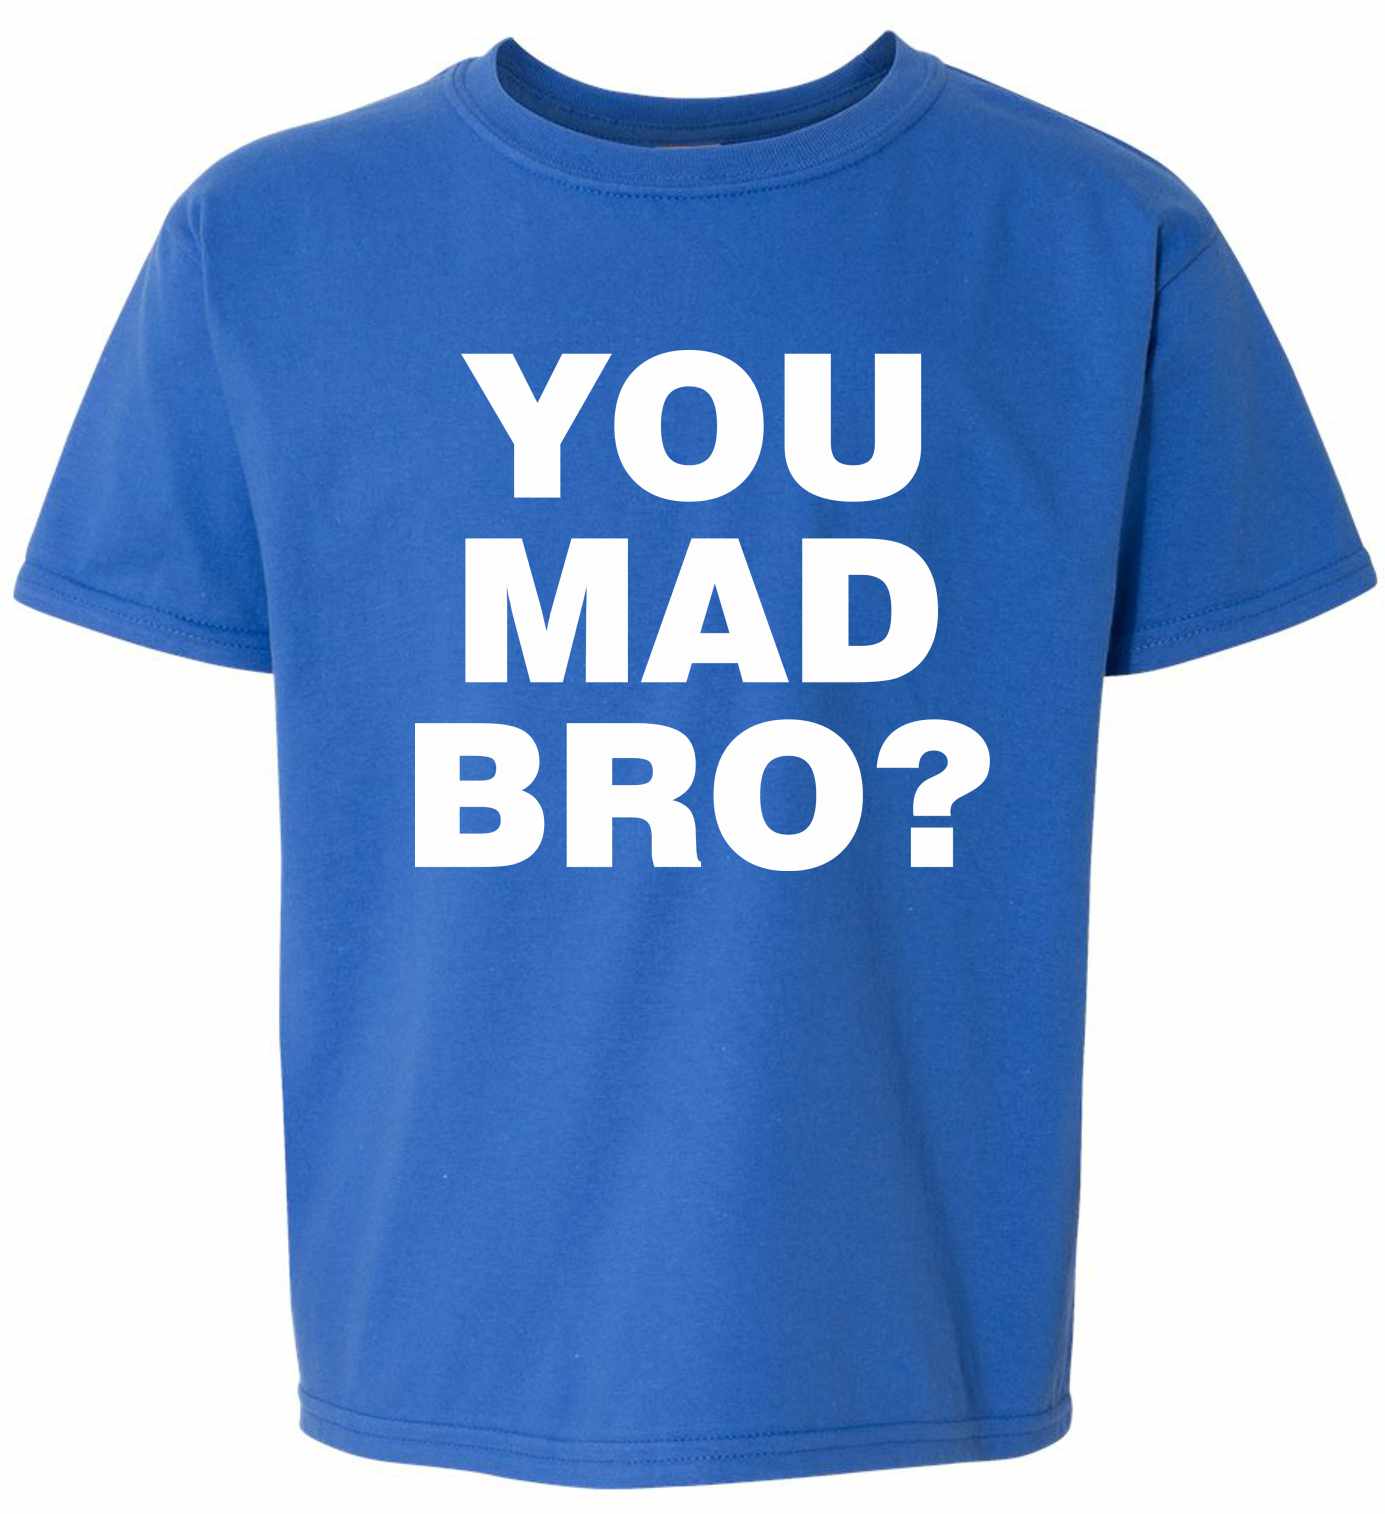 YOU MAD BRO? on Kids T-Shirt